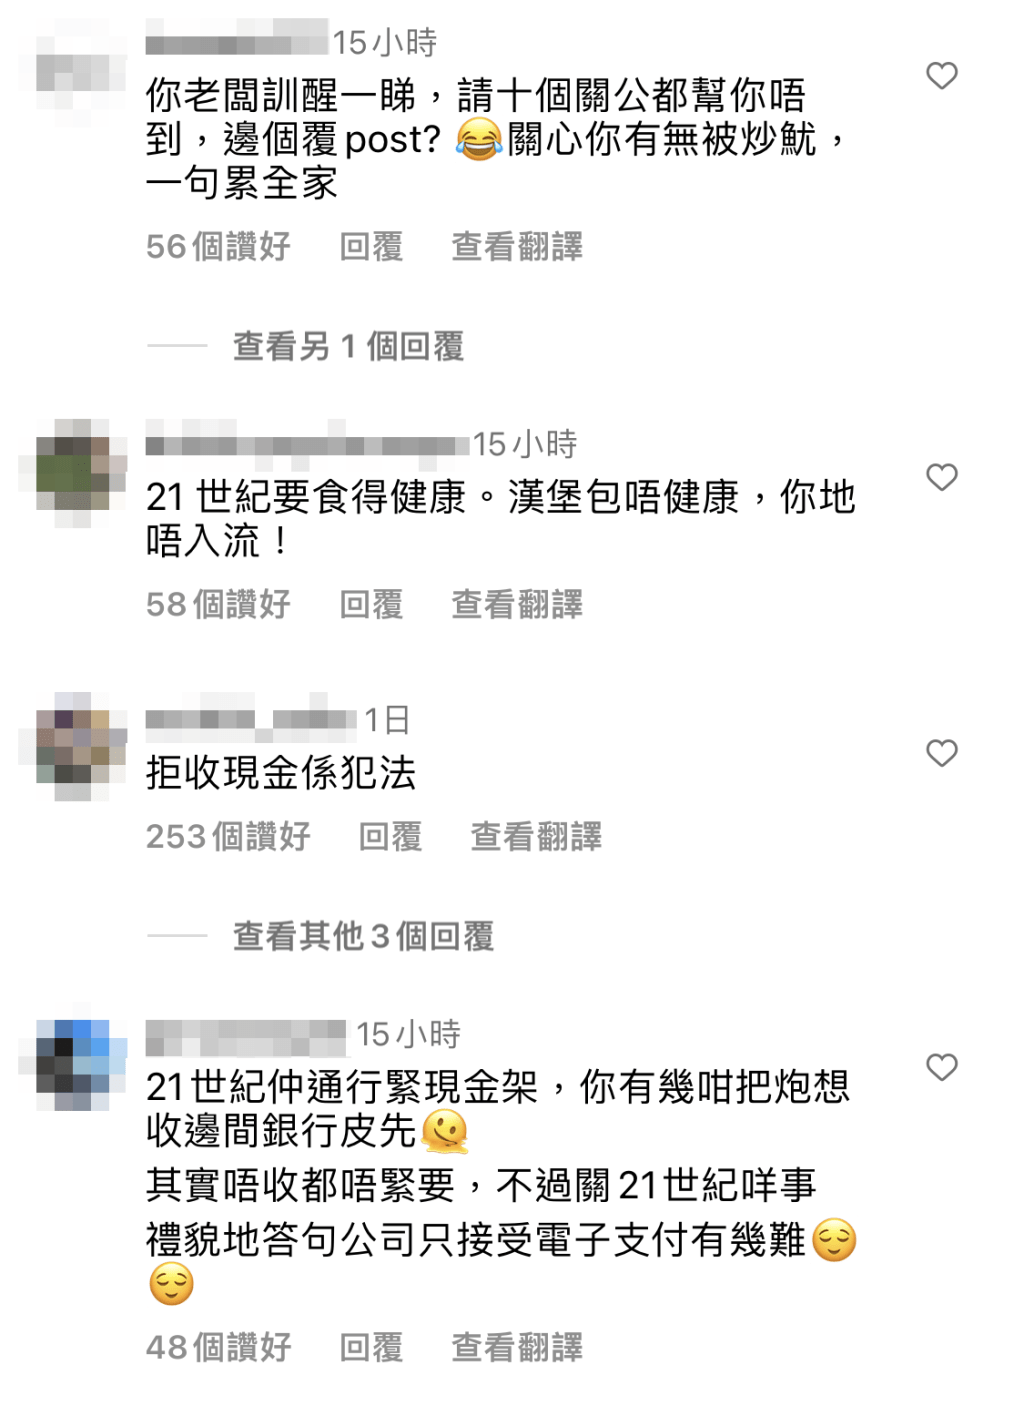 有网民指拒收现金是违法行为，其实香港并无法例禁止商店拒收现金。